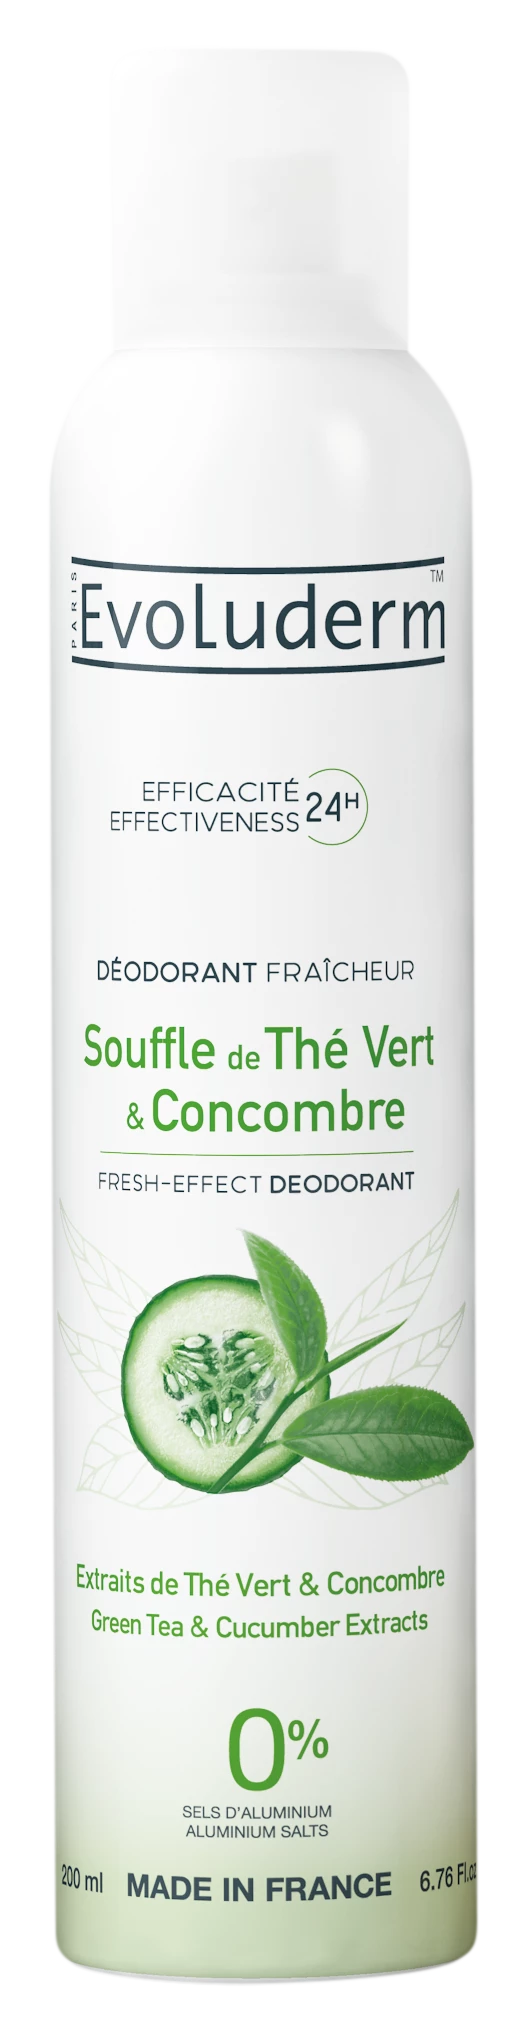 Déodorant Fraîcheur Souffle De Thé Vert & Concombre 200ml - Evoluderm